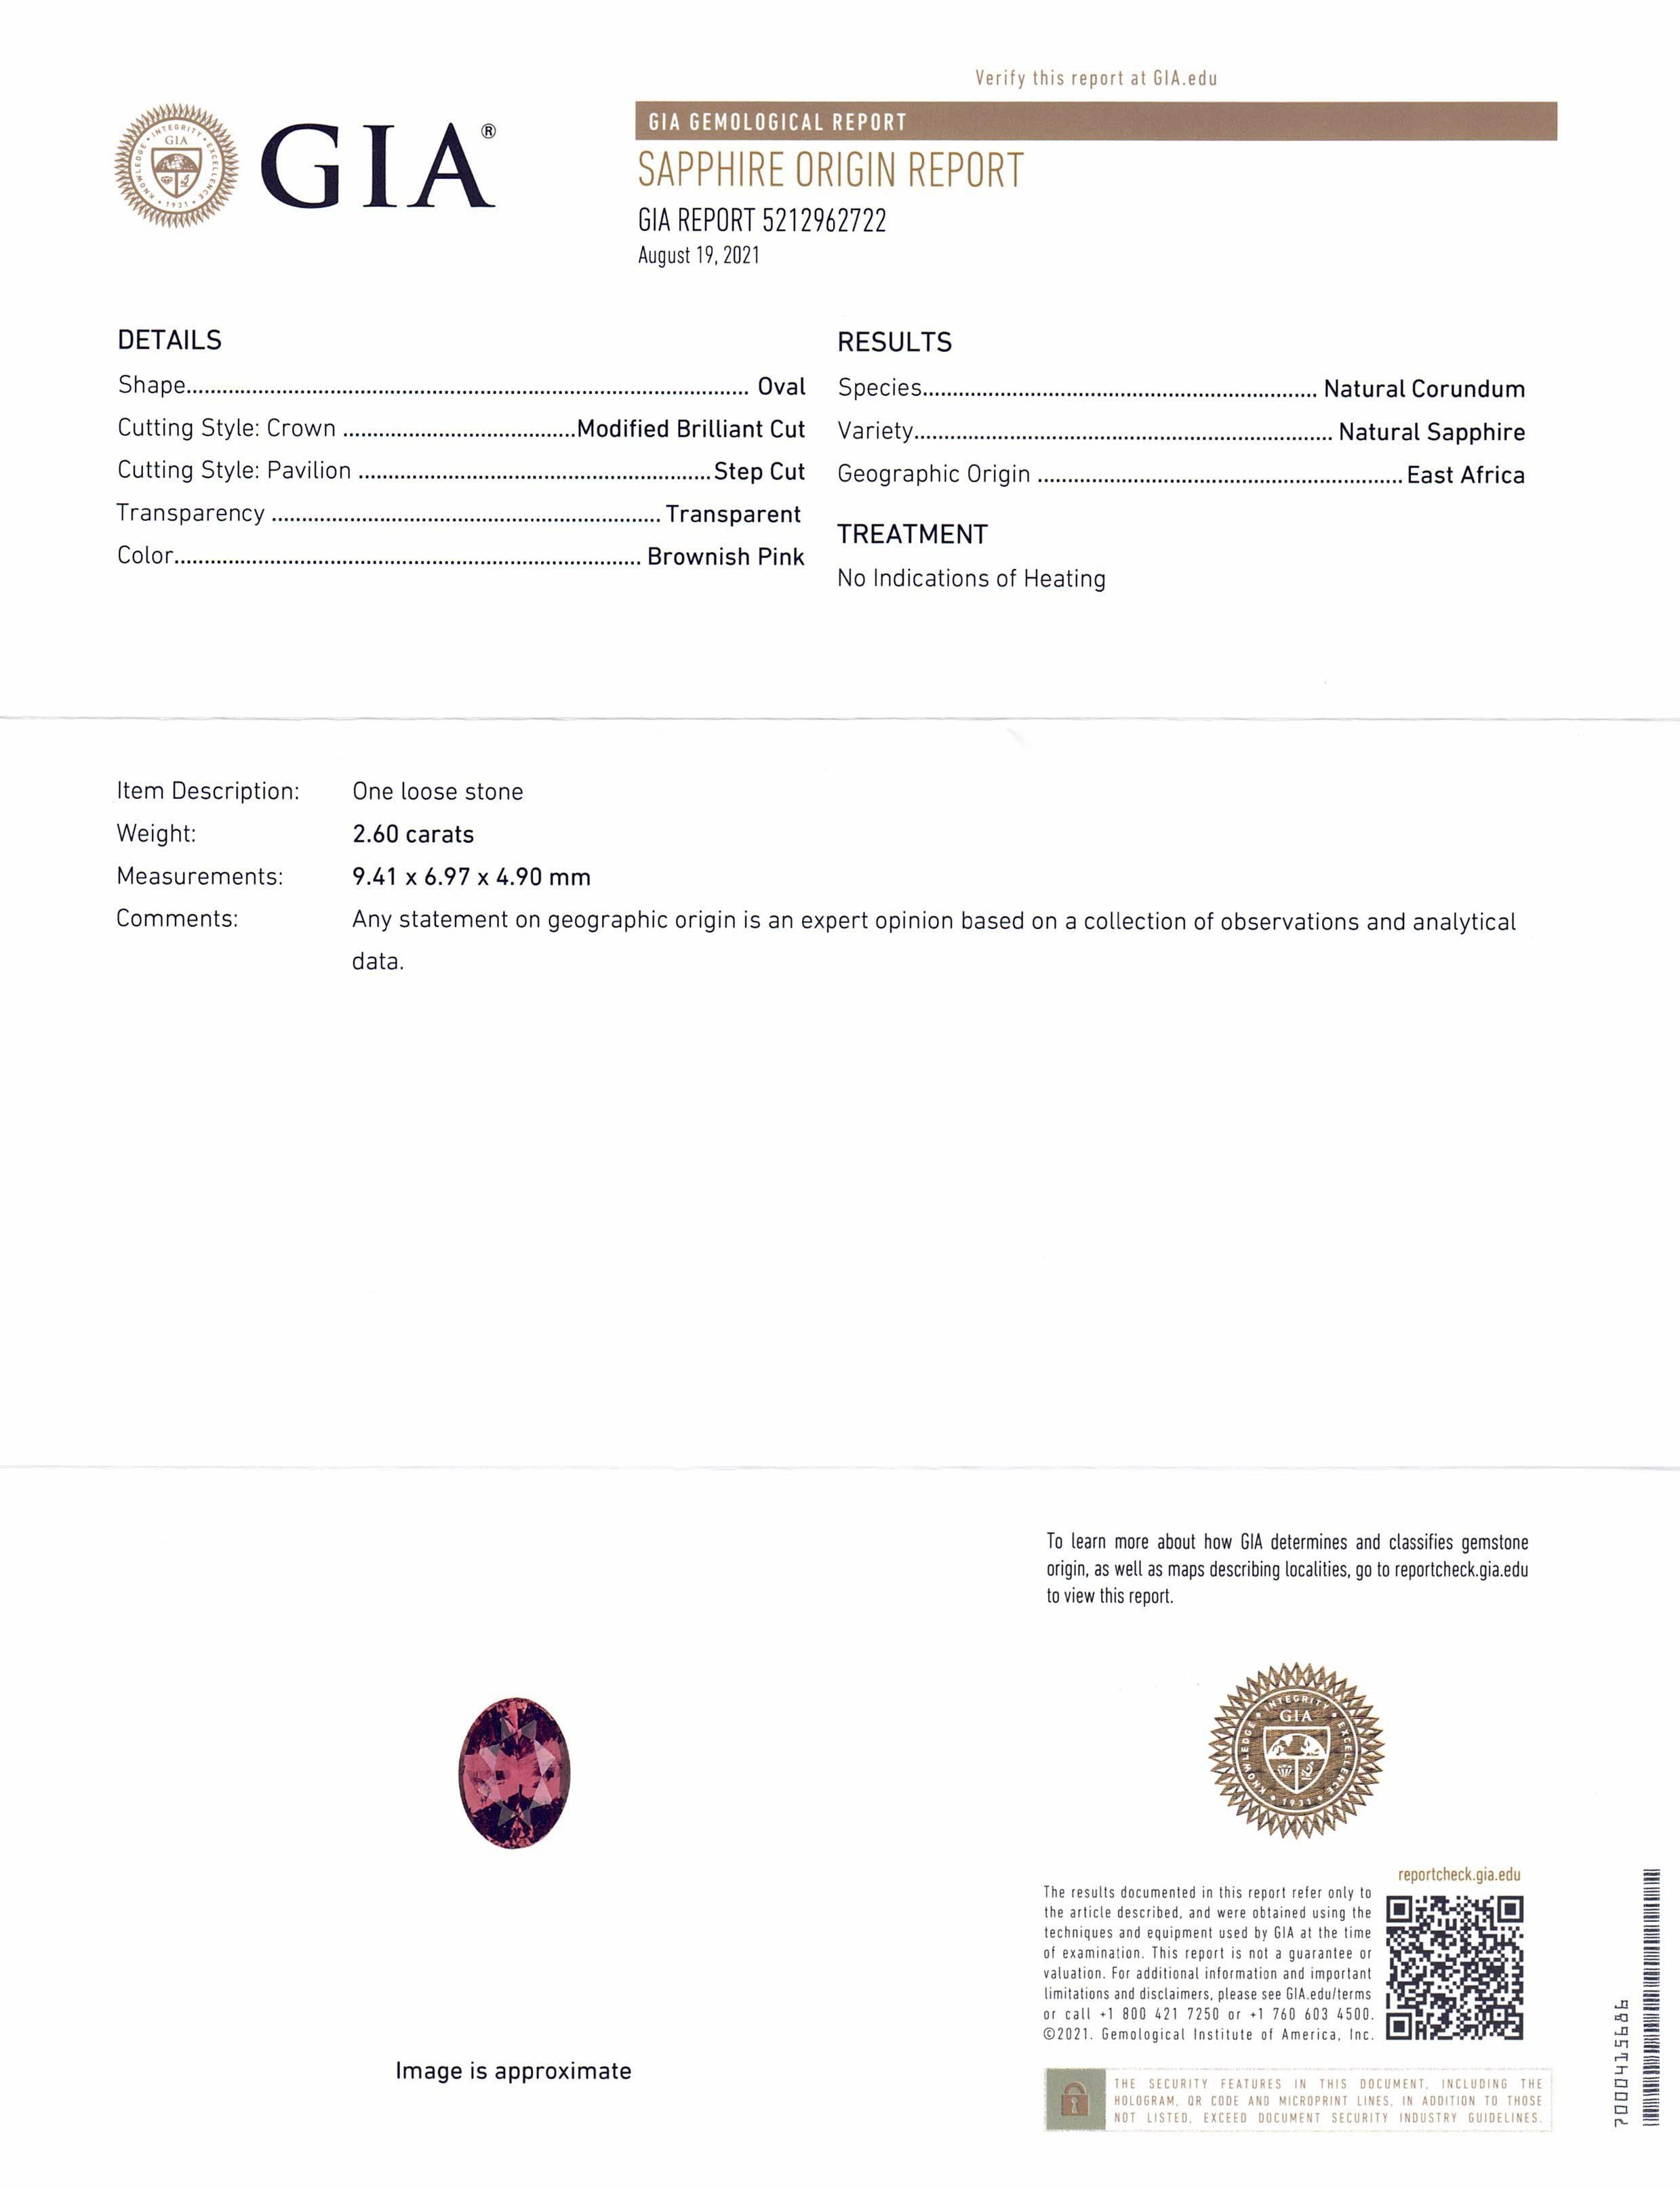 Saphir ovale rose brunâtre 2,6 carats certifié GIA, Afrique de l'Est, non chauffé Unisexe en vente